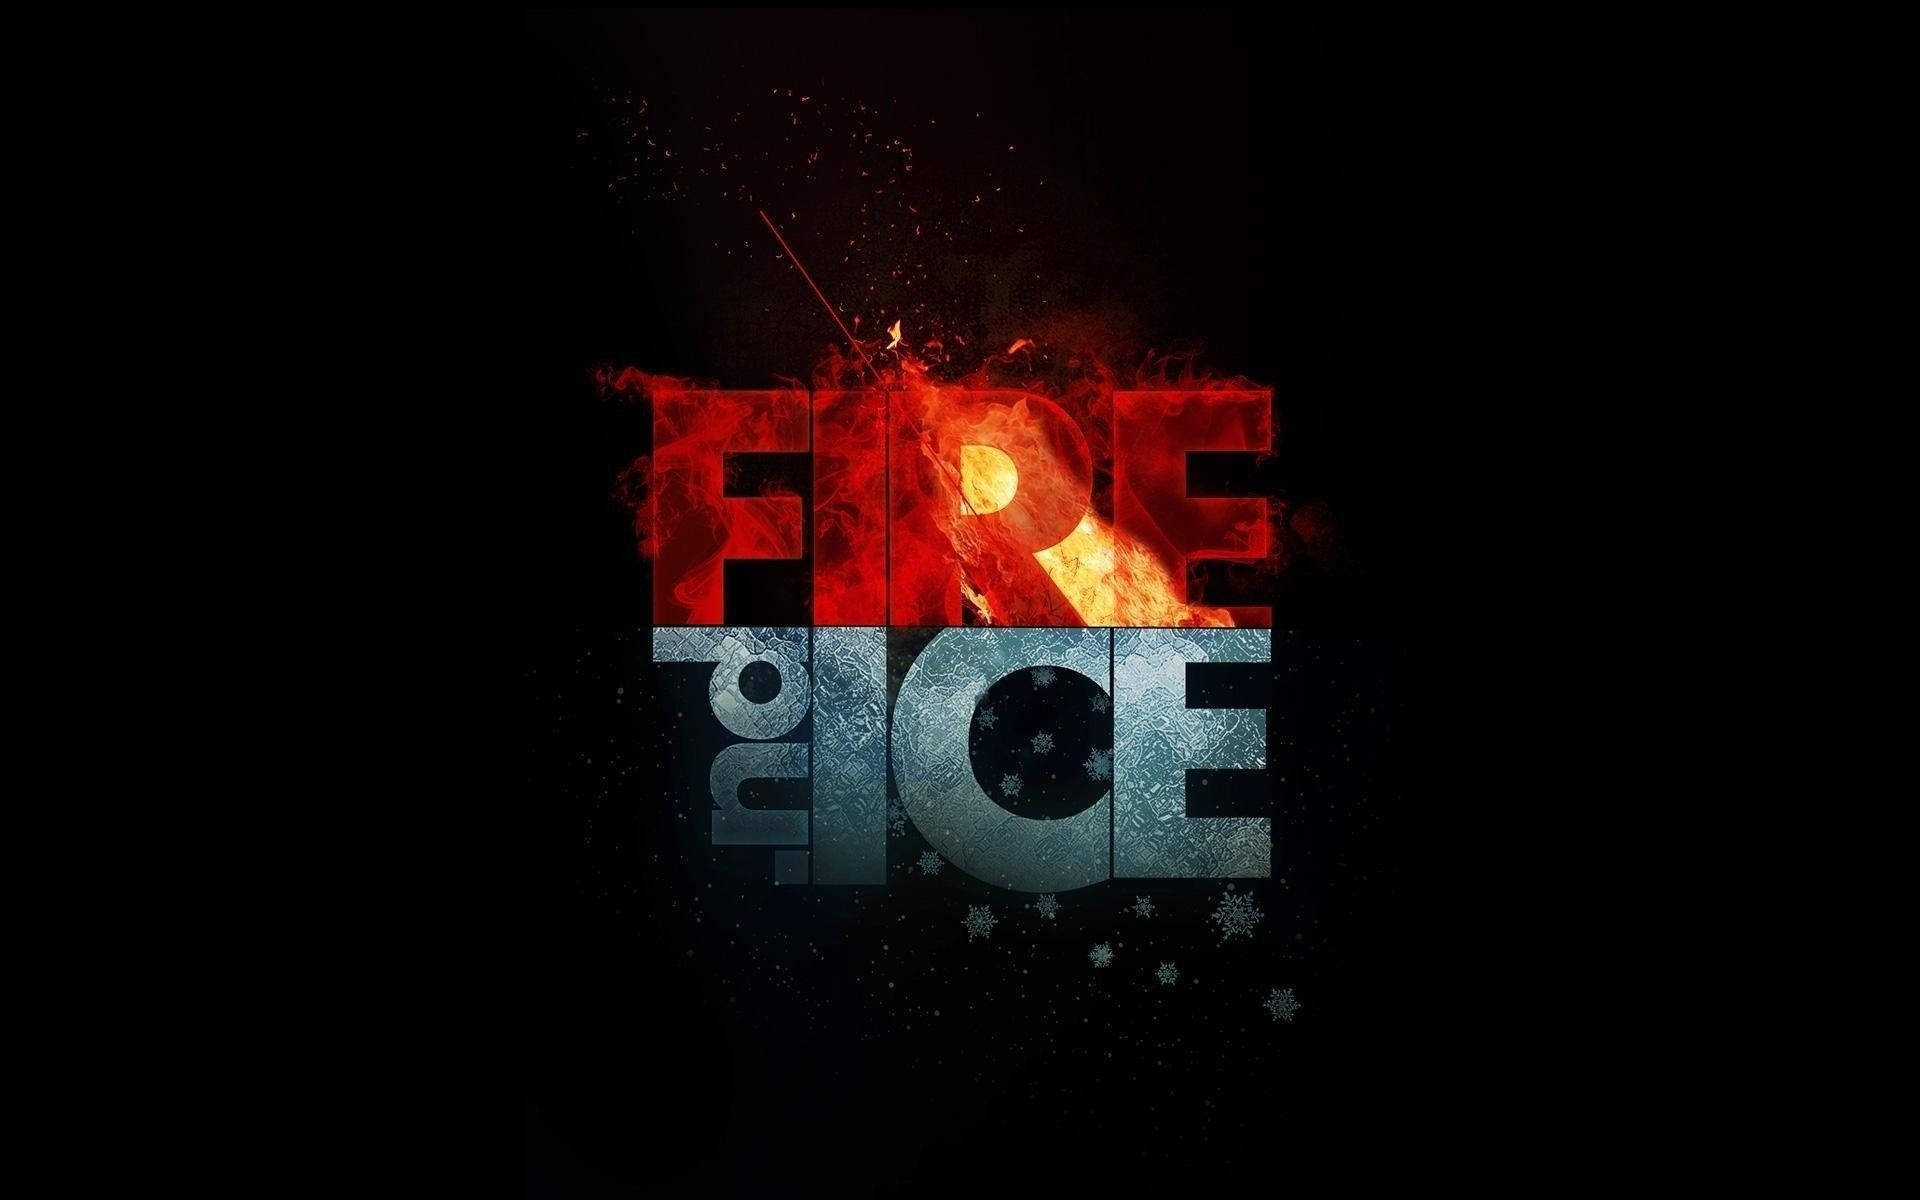 Brand Og Ice Logo Wallpaper